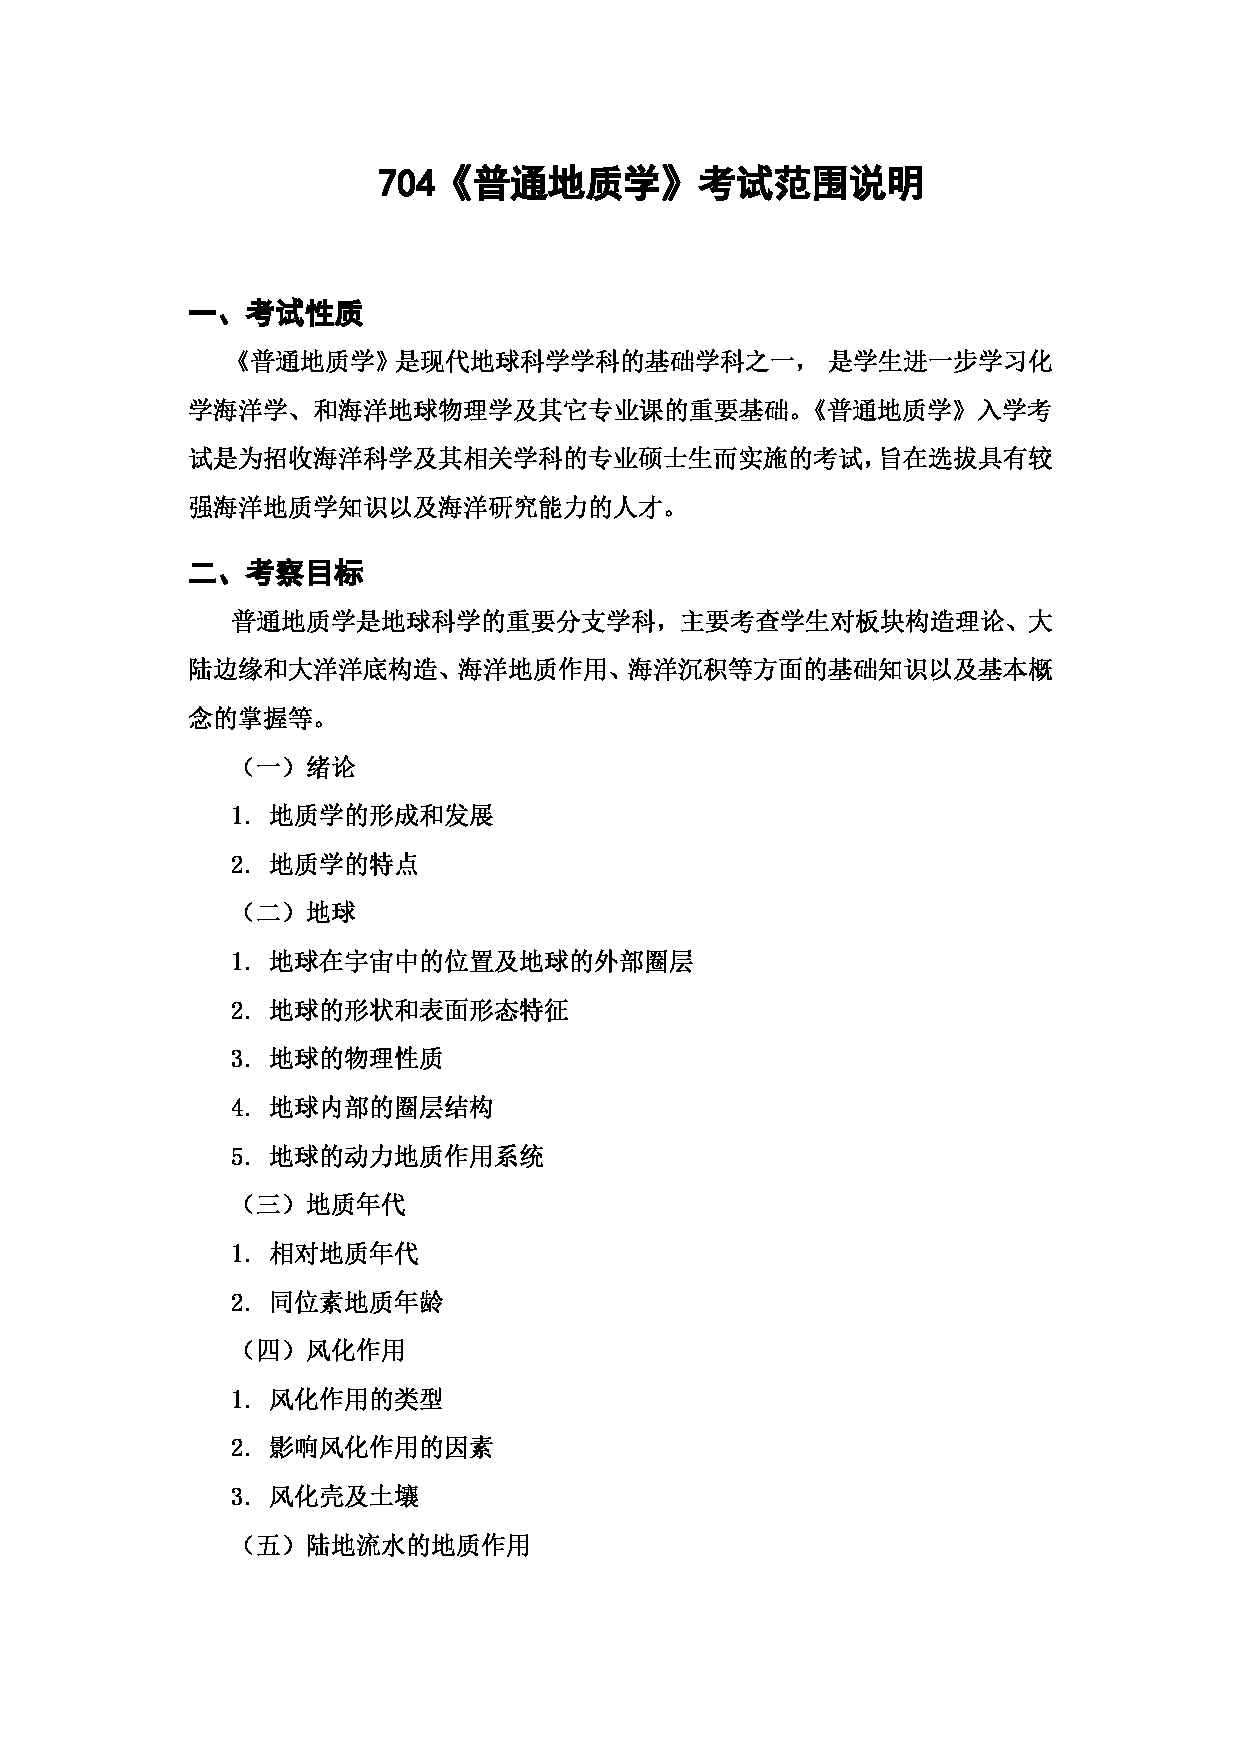 上海海洋大学2023年考研自命题科目 704《普通地质学》 考试范围第1页